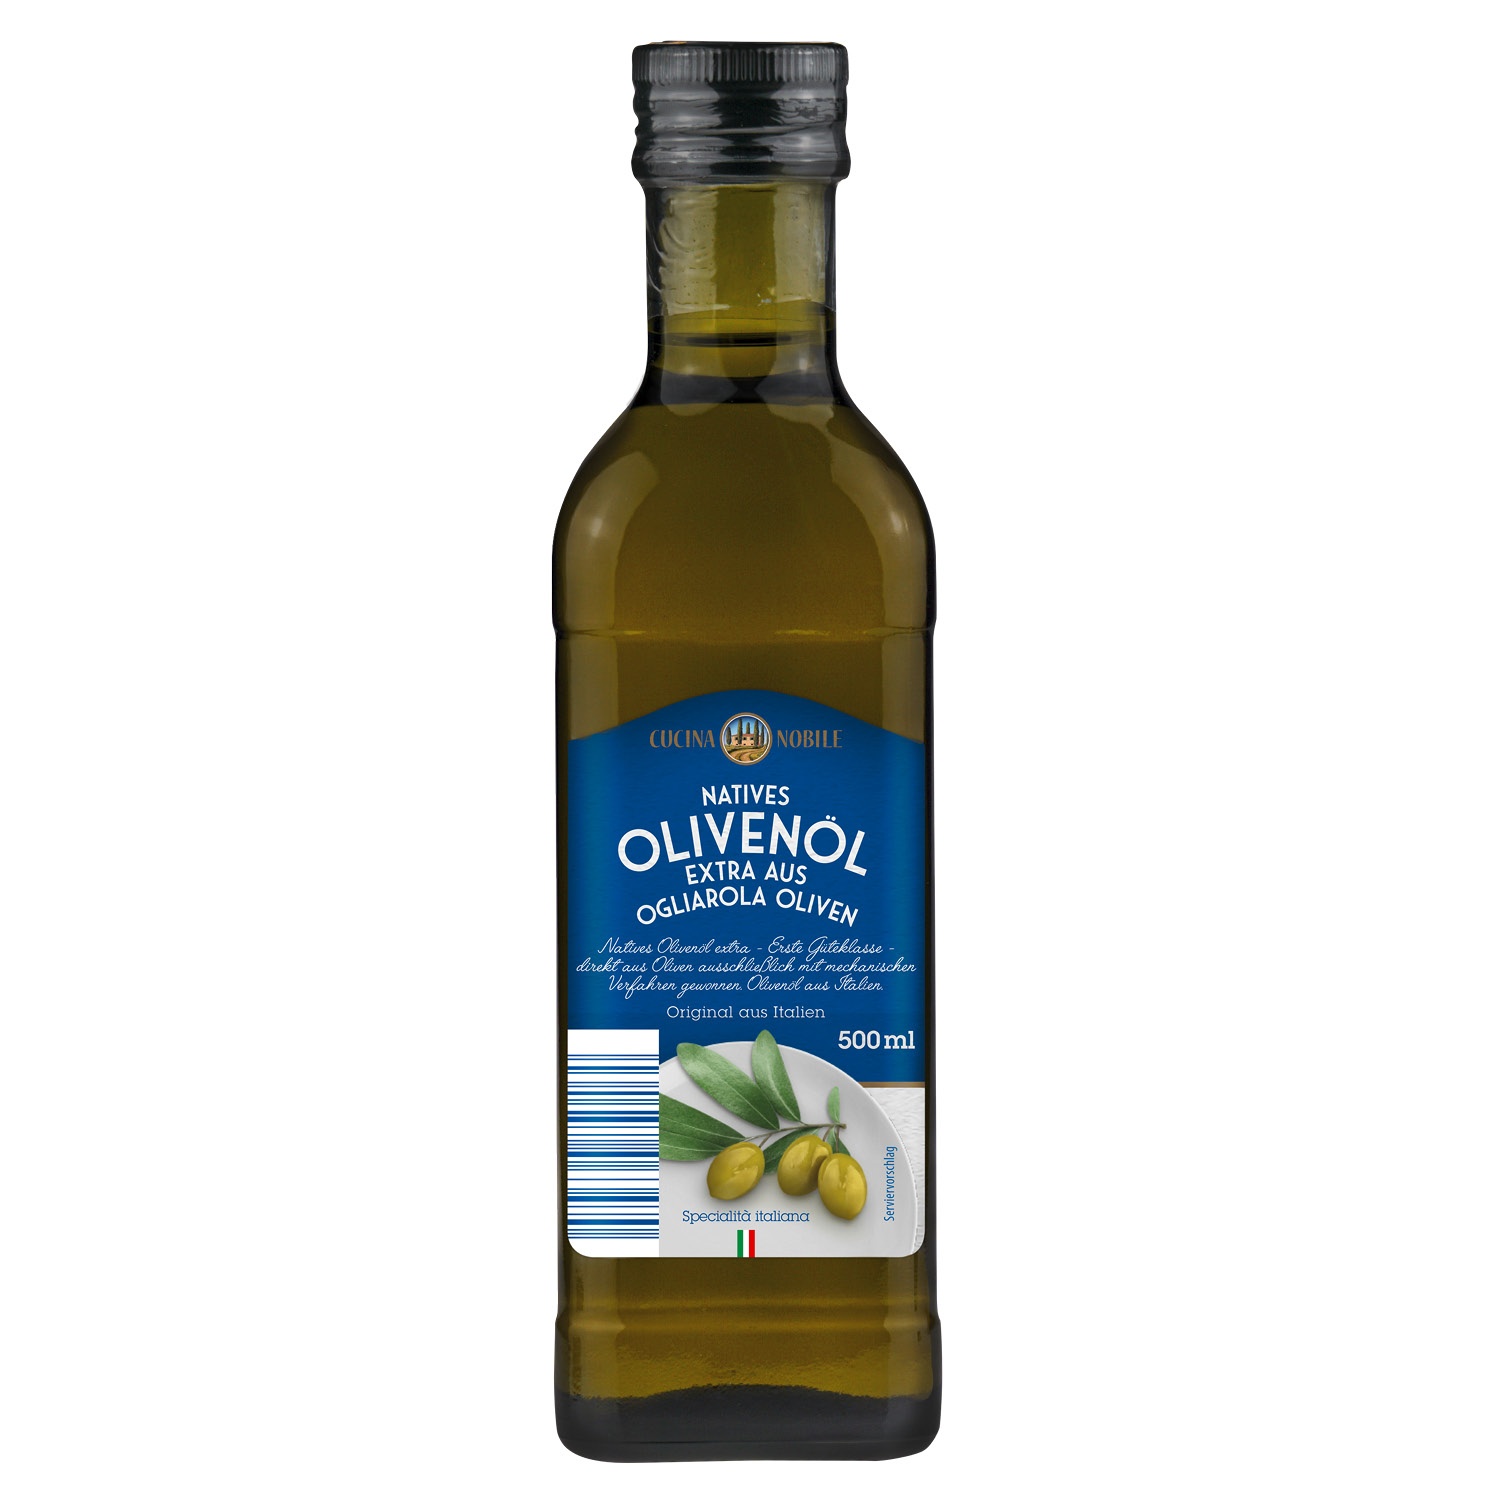 CUCINA NOBILE Natives Olivenöl extra 500 ml